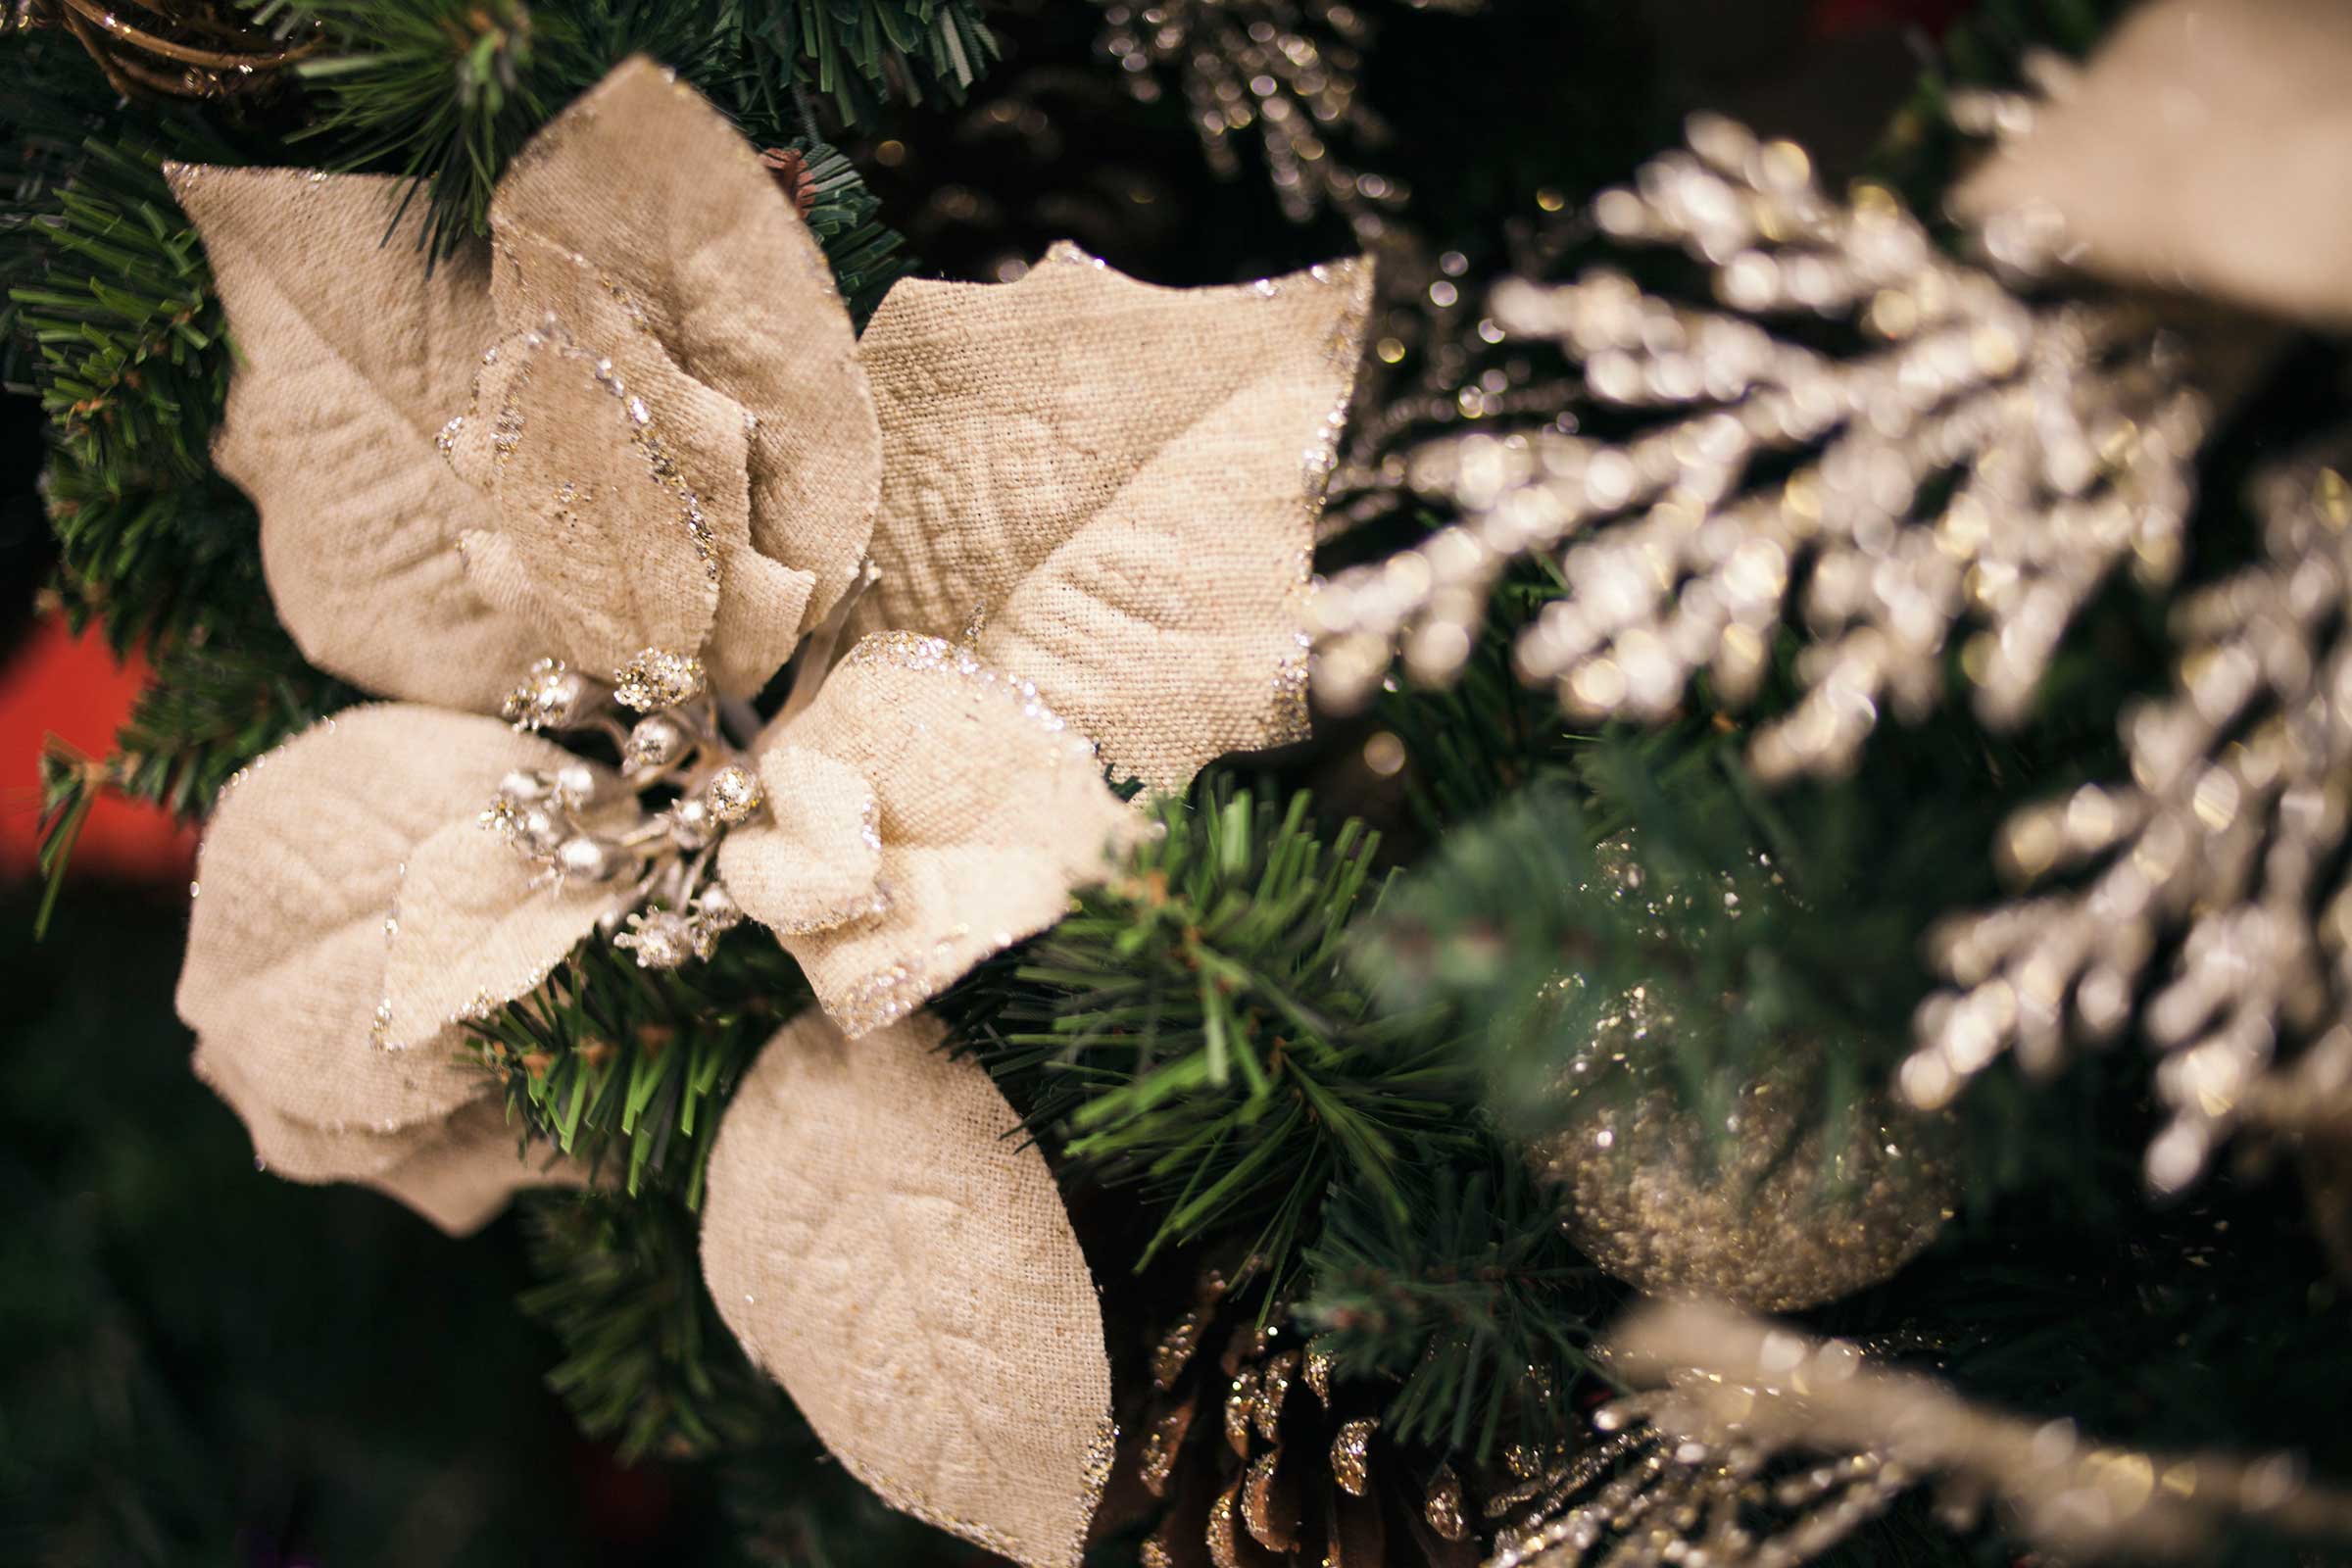 White poinsettias in a Christmas tree.